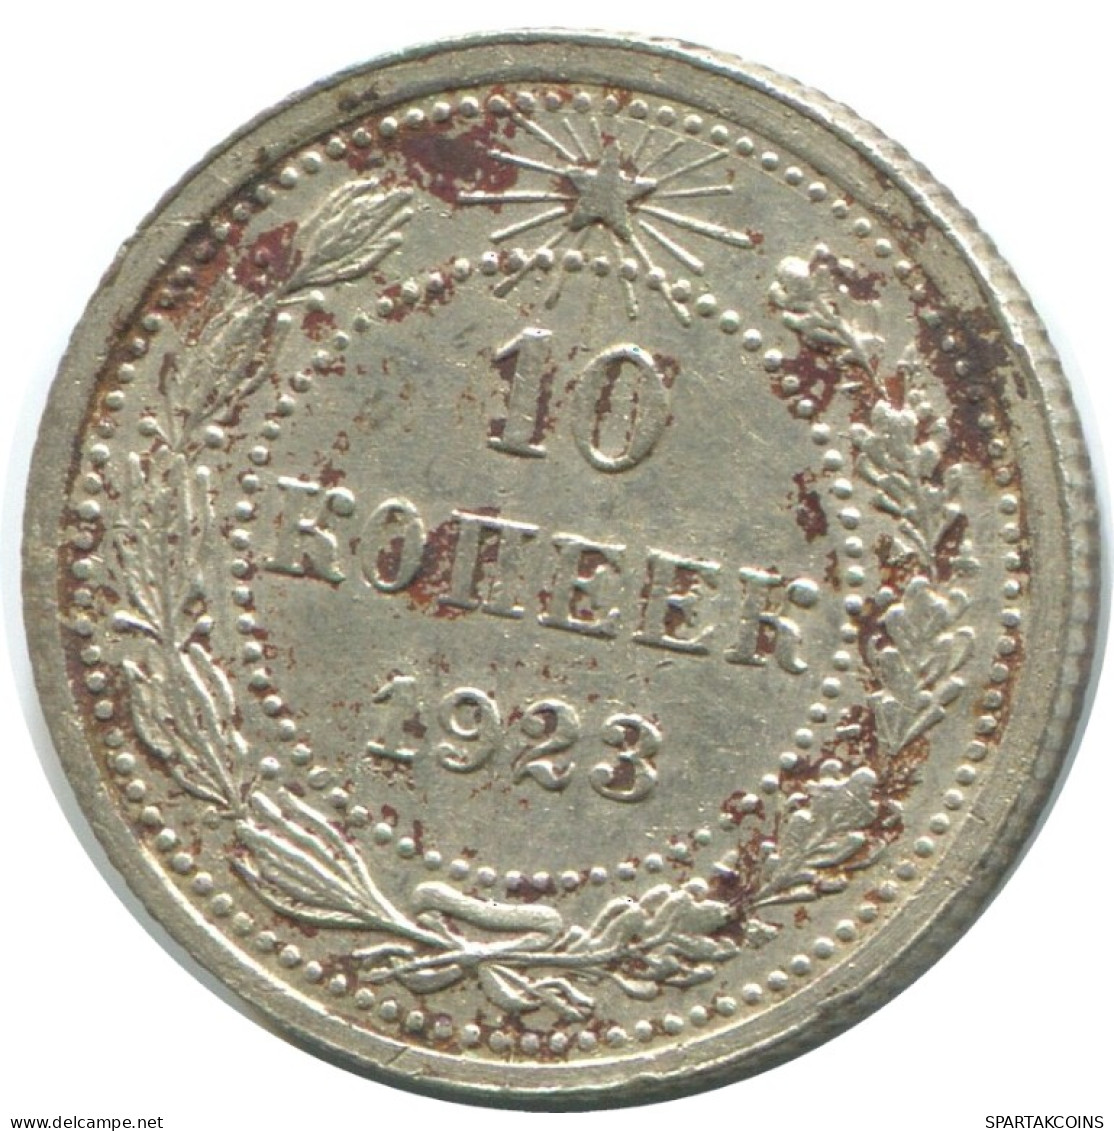 10 KOPEKS 1923 RUSSLAND RUSSIA RSFSR SILBER Münze HIGH GRADE #AE936.4.D.A - Russie